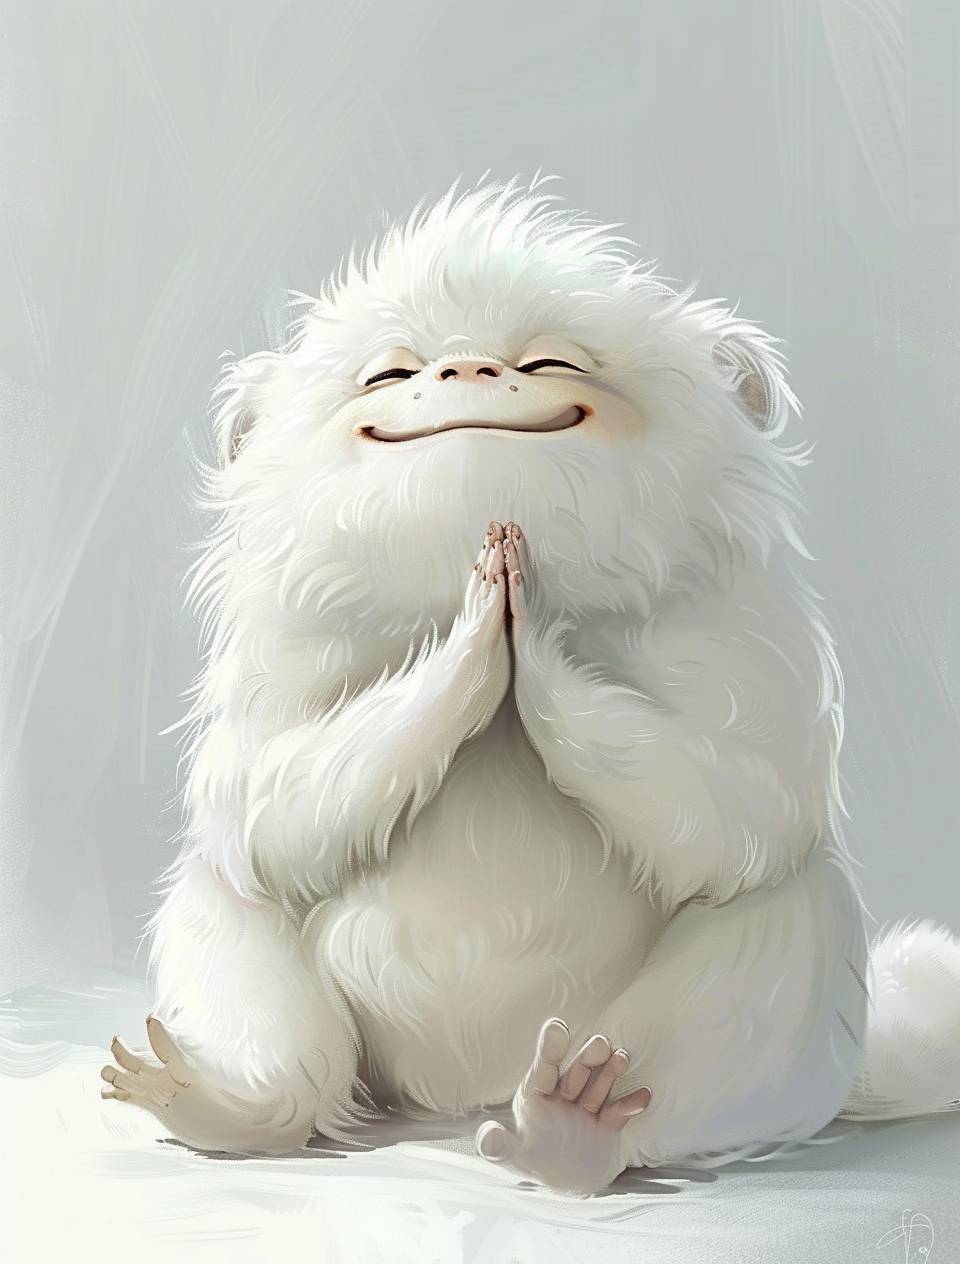 かわいらしい白い体の太った猿で、笑顔でその目を閉じ、手を胸に合わせて祈りを捧げています。白く清潔な壁の背景。全身に白い毛が生え、白い耳と白い尾があります。アニメスタイルとピクサーアートスタイル。